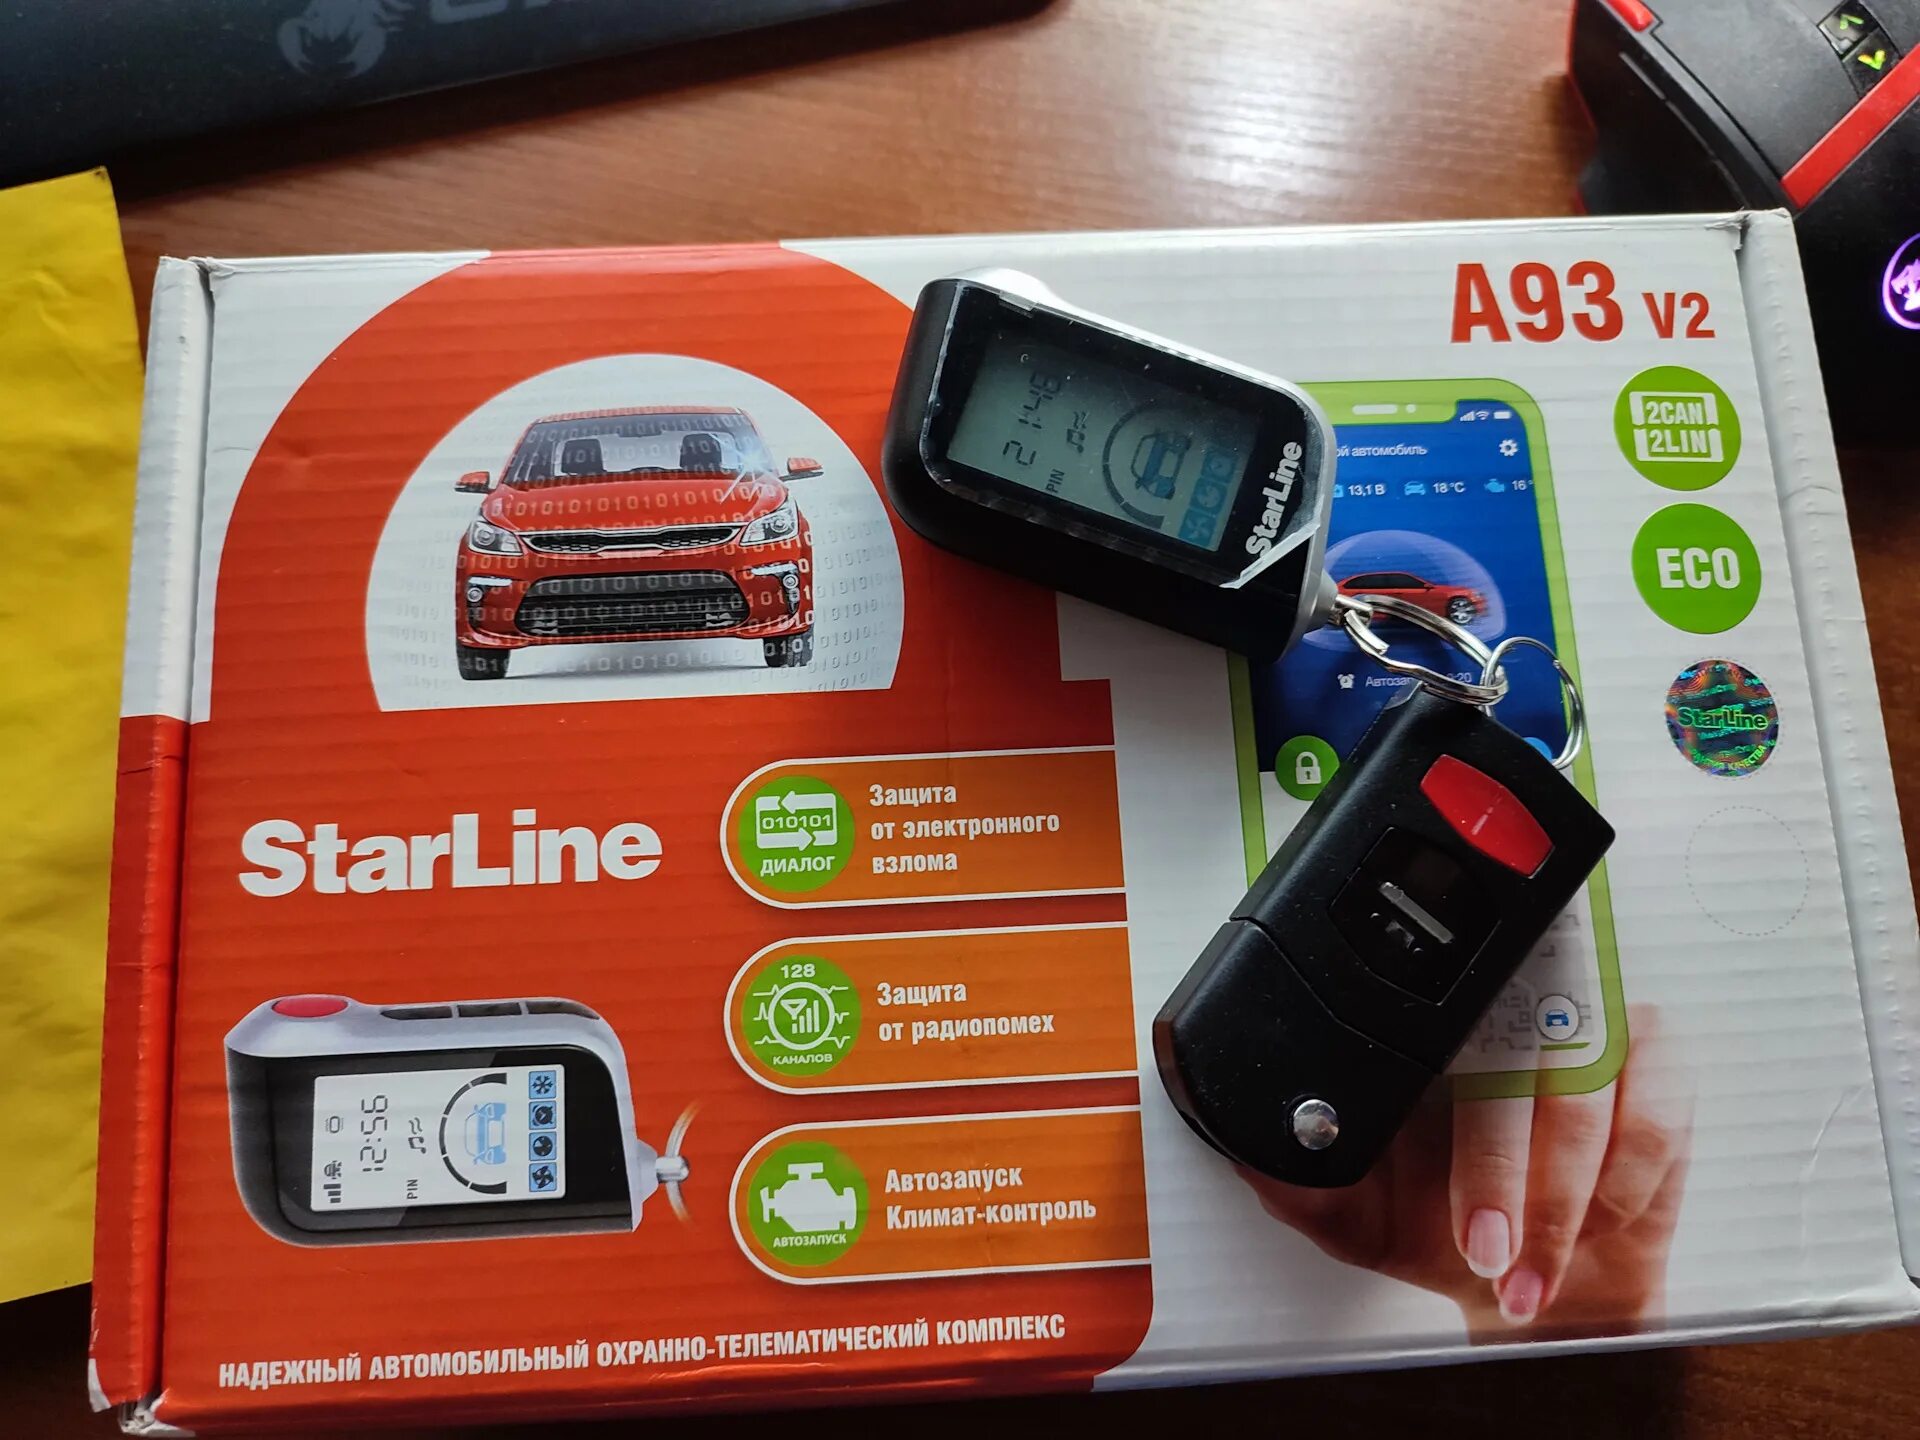 Автосигнализация starline a93 2can 2lin. Сигнализация с автозапуском STARLINE a93. Автосигнализация STARLINE a93 v2 2can+2lin GSM Eco. STARLINE a93 Eco. Комплектация сигнализации старлайн а93 с автозапуском.